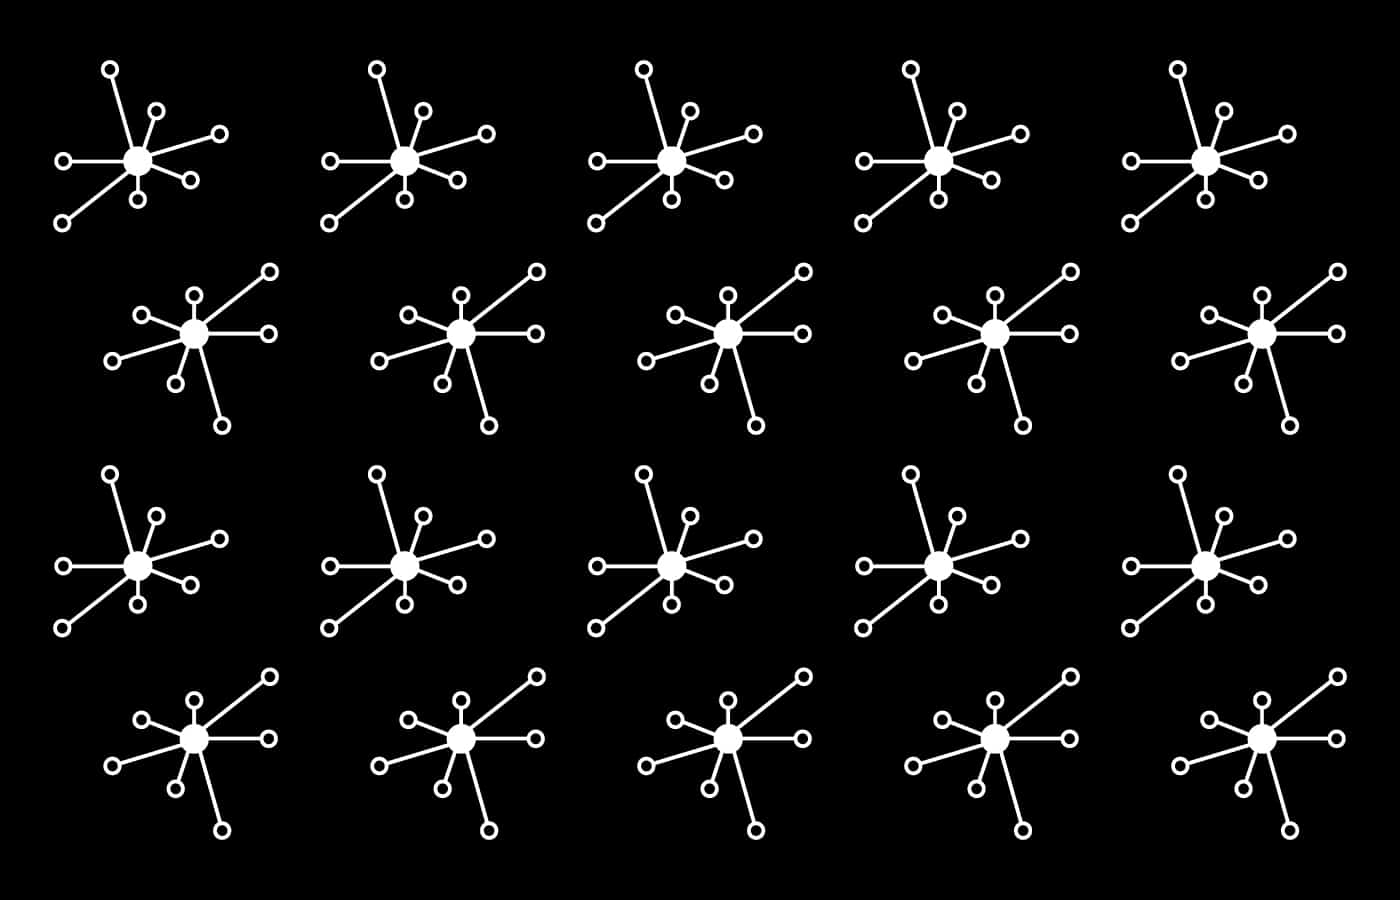 symbole-du-logo-de-tristan-schelte-facilitateur-sur-strasbourg-motif-charte-graphique